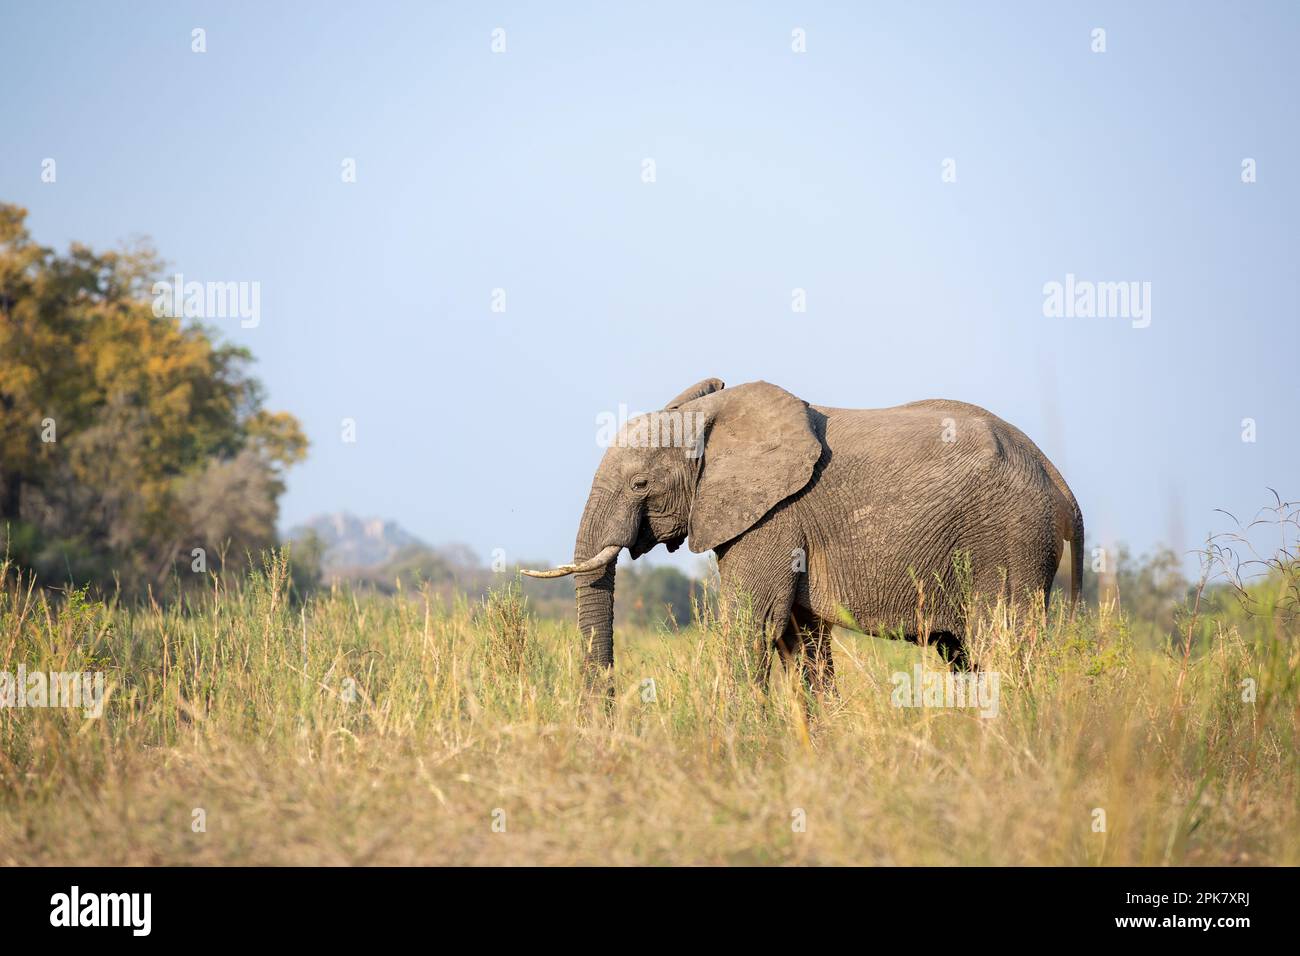 Un elefante, Loxodonta africana, che cammina attraverso erba lunga, in bianco e nero. Foto Stock